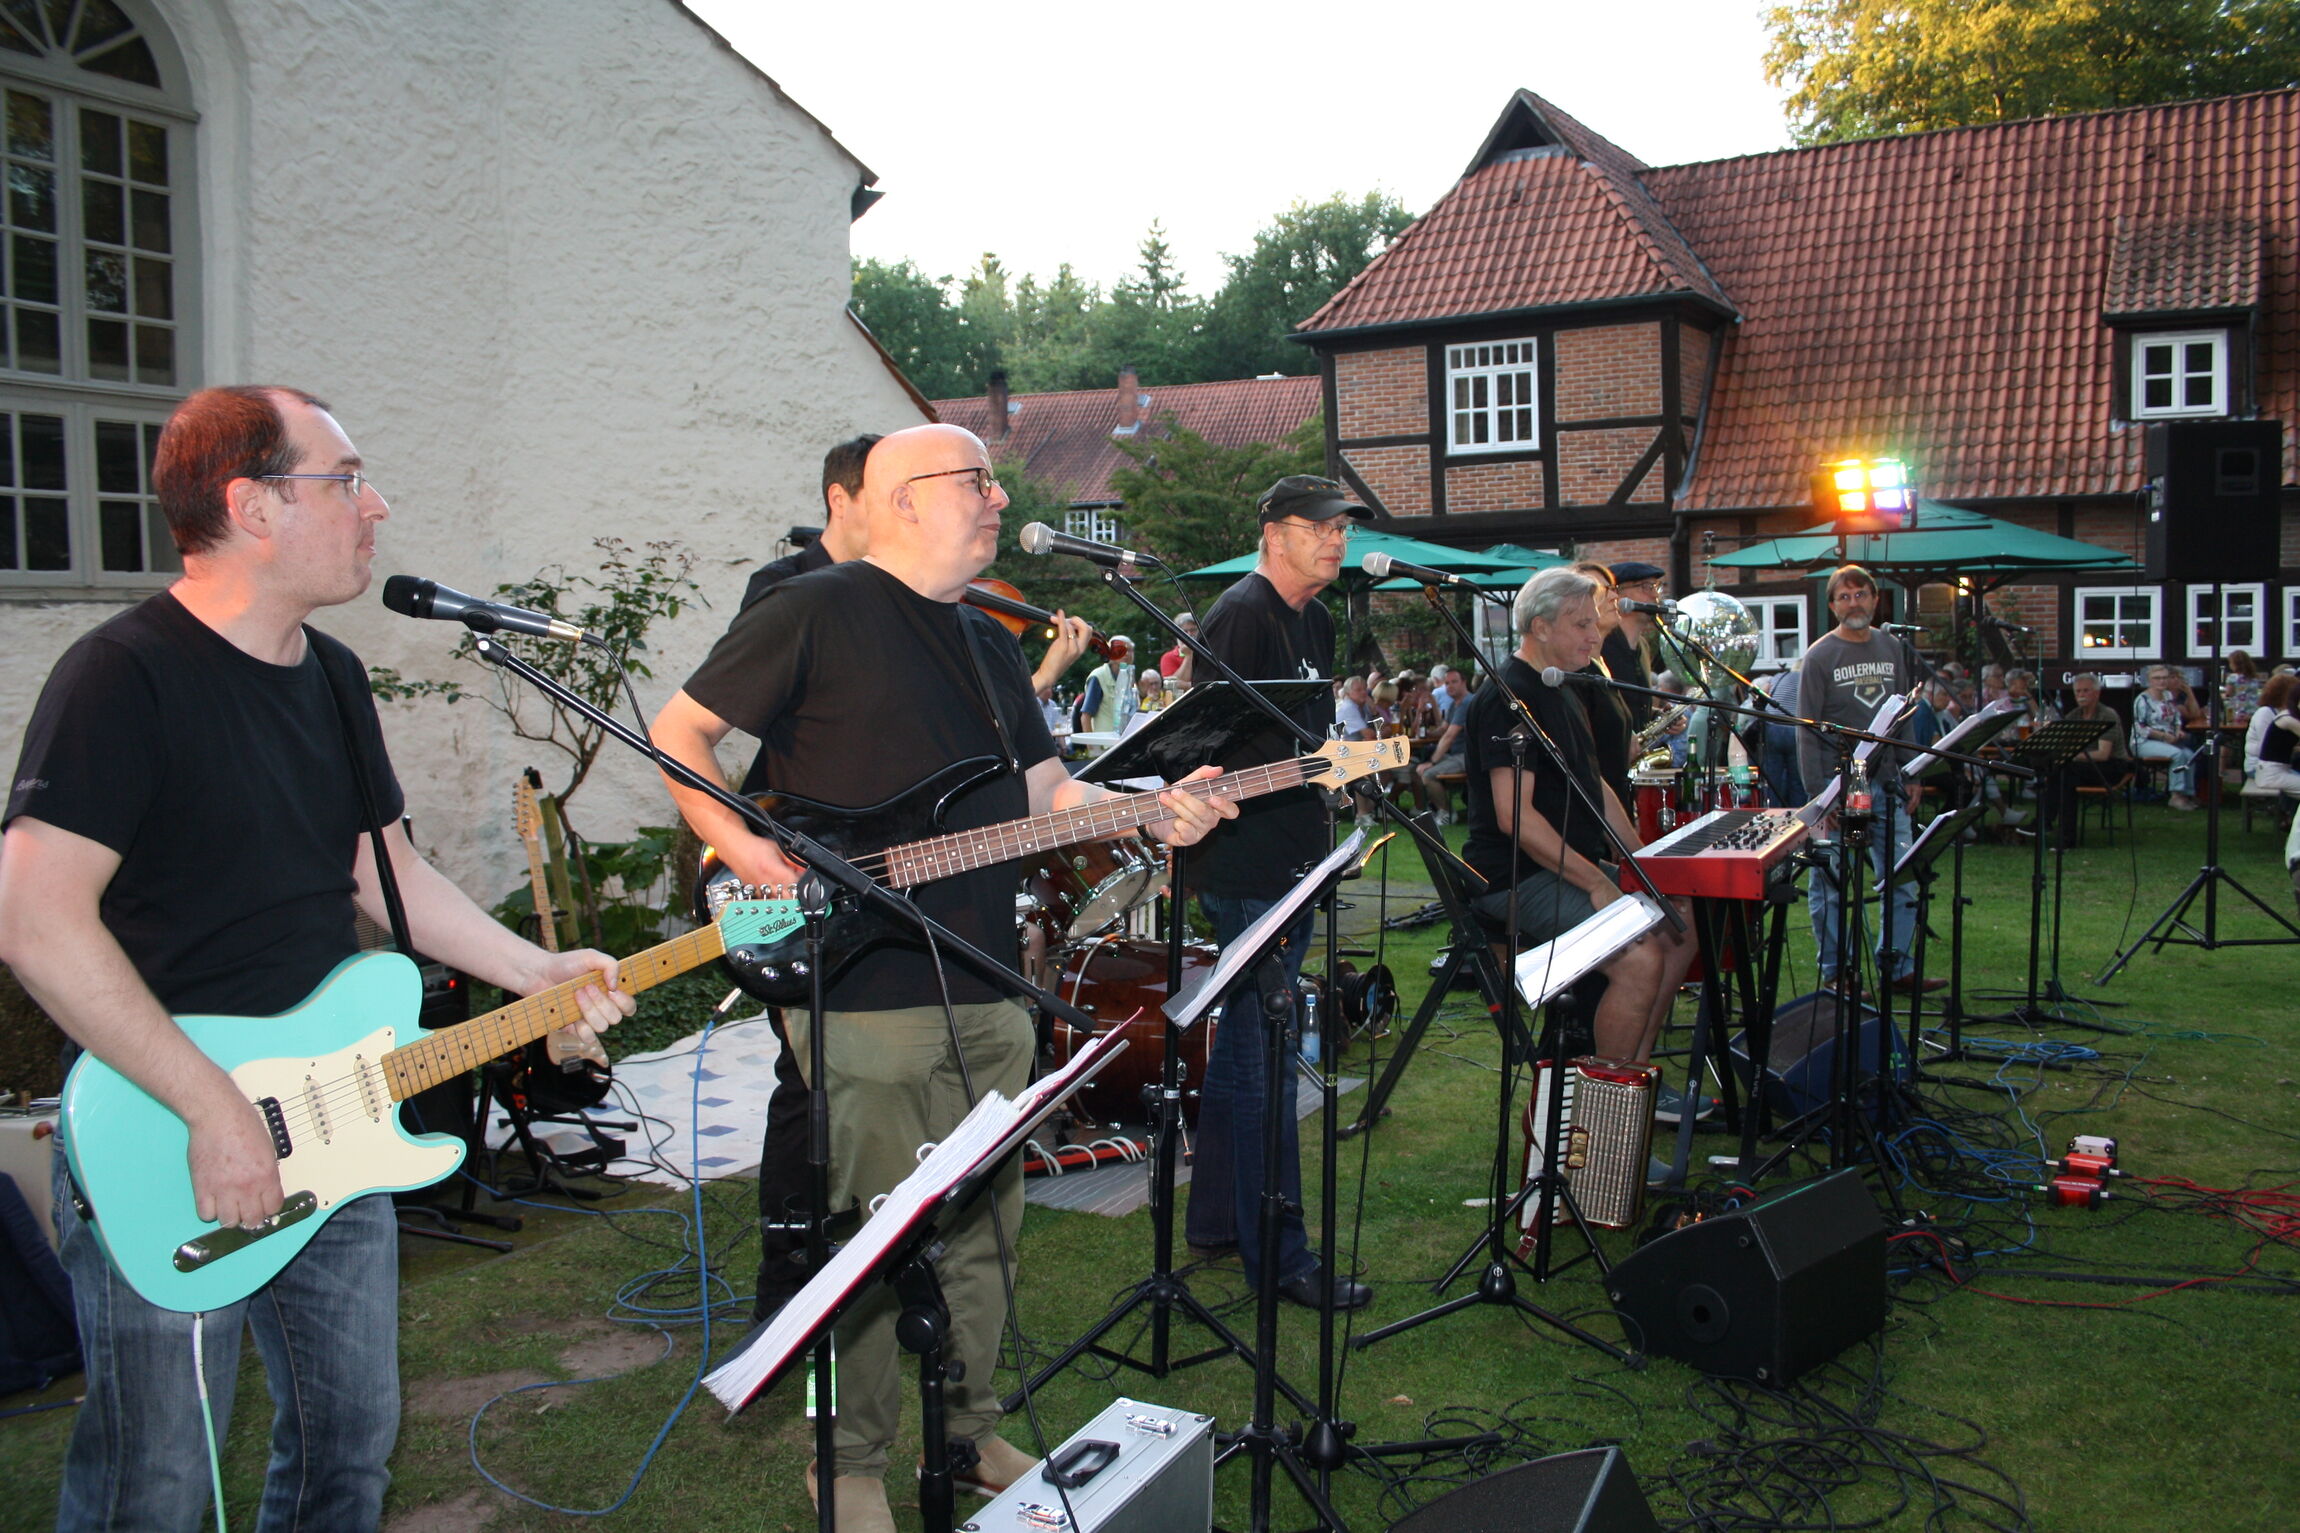 Die Lehrerband des Walsroder Gymnasiums spielte zum zehnjährigen Bestehen an der Meinerdinger Kirche. Auch ehemalige Bandmitglieder waren aktiv dabei.